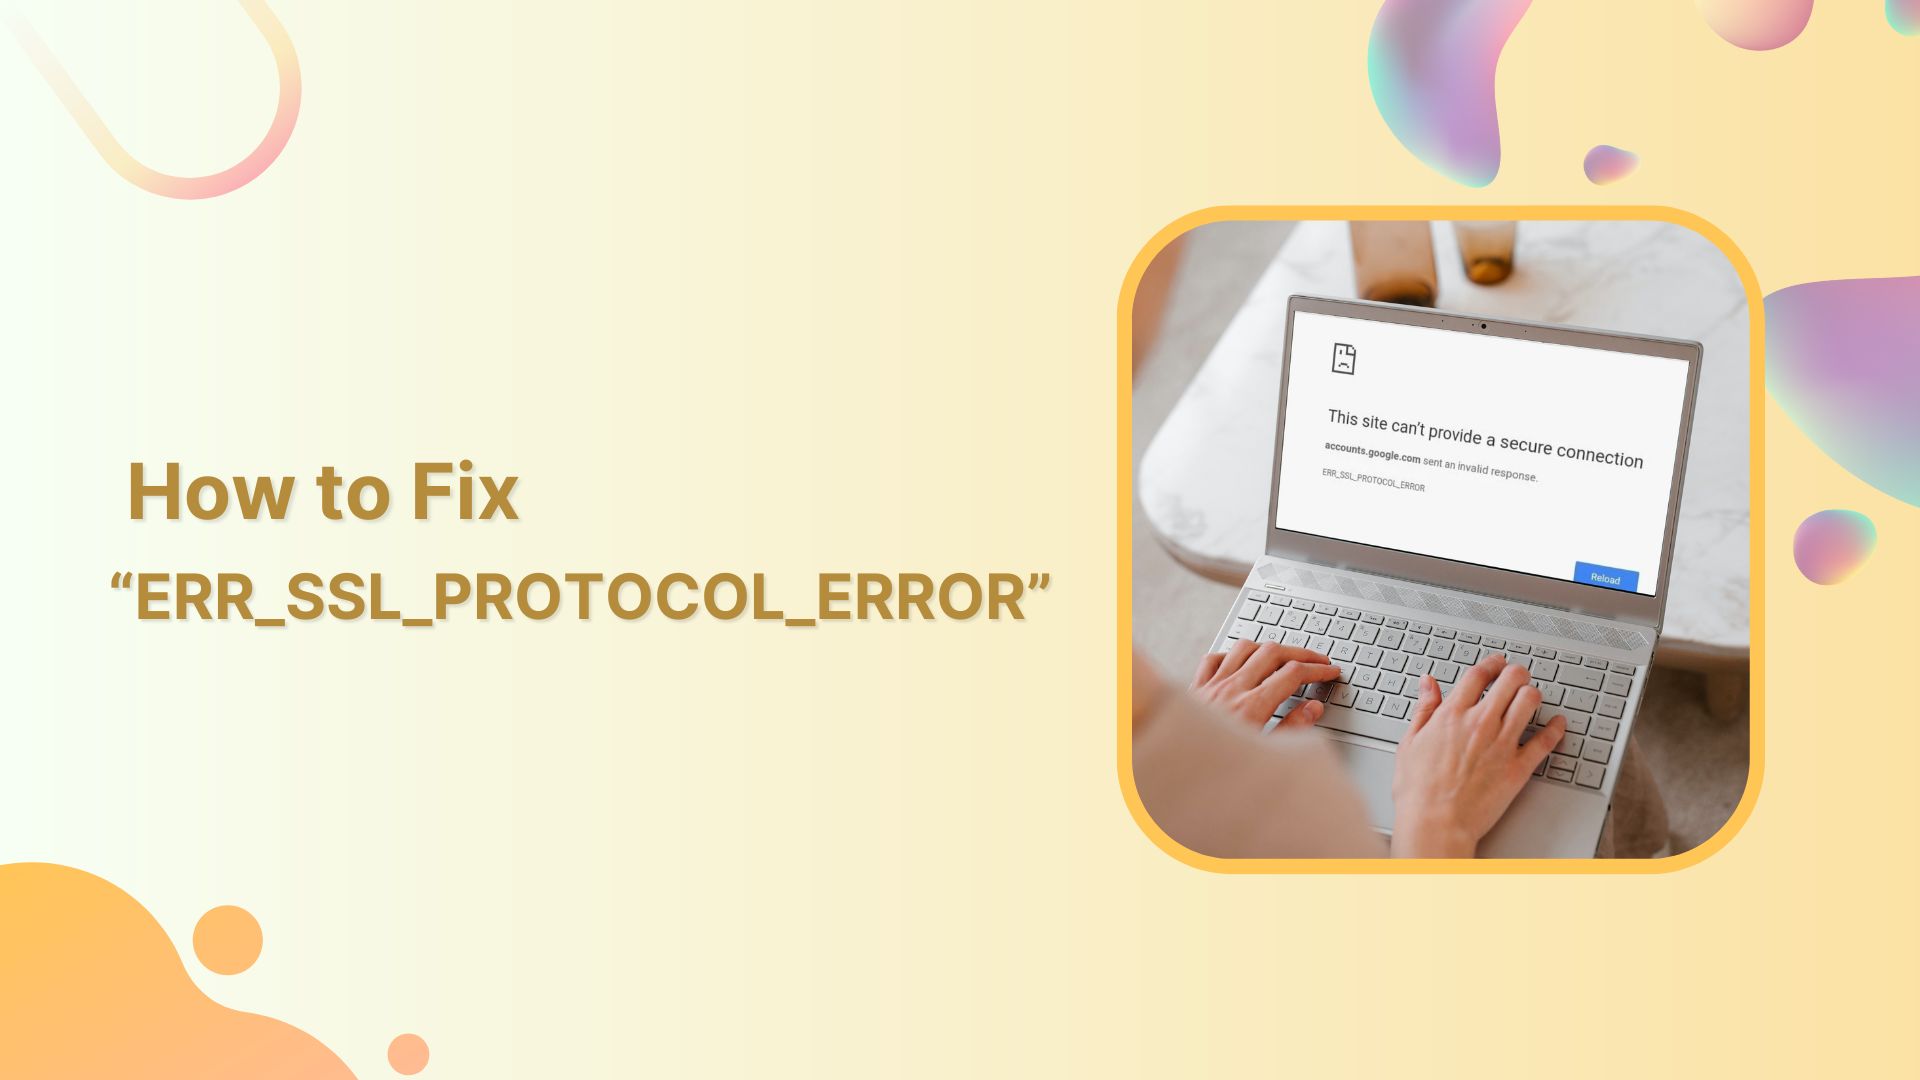 err-ssl-protocol-error